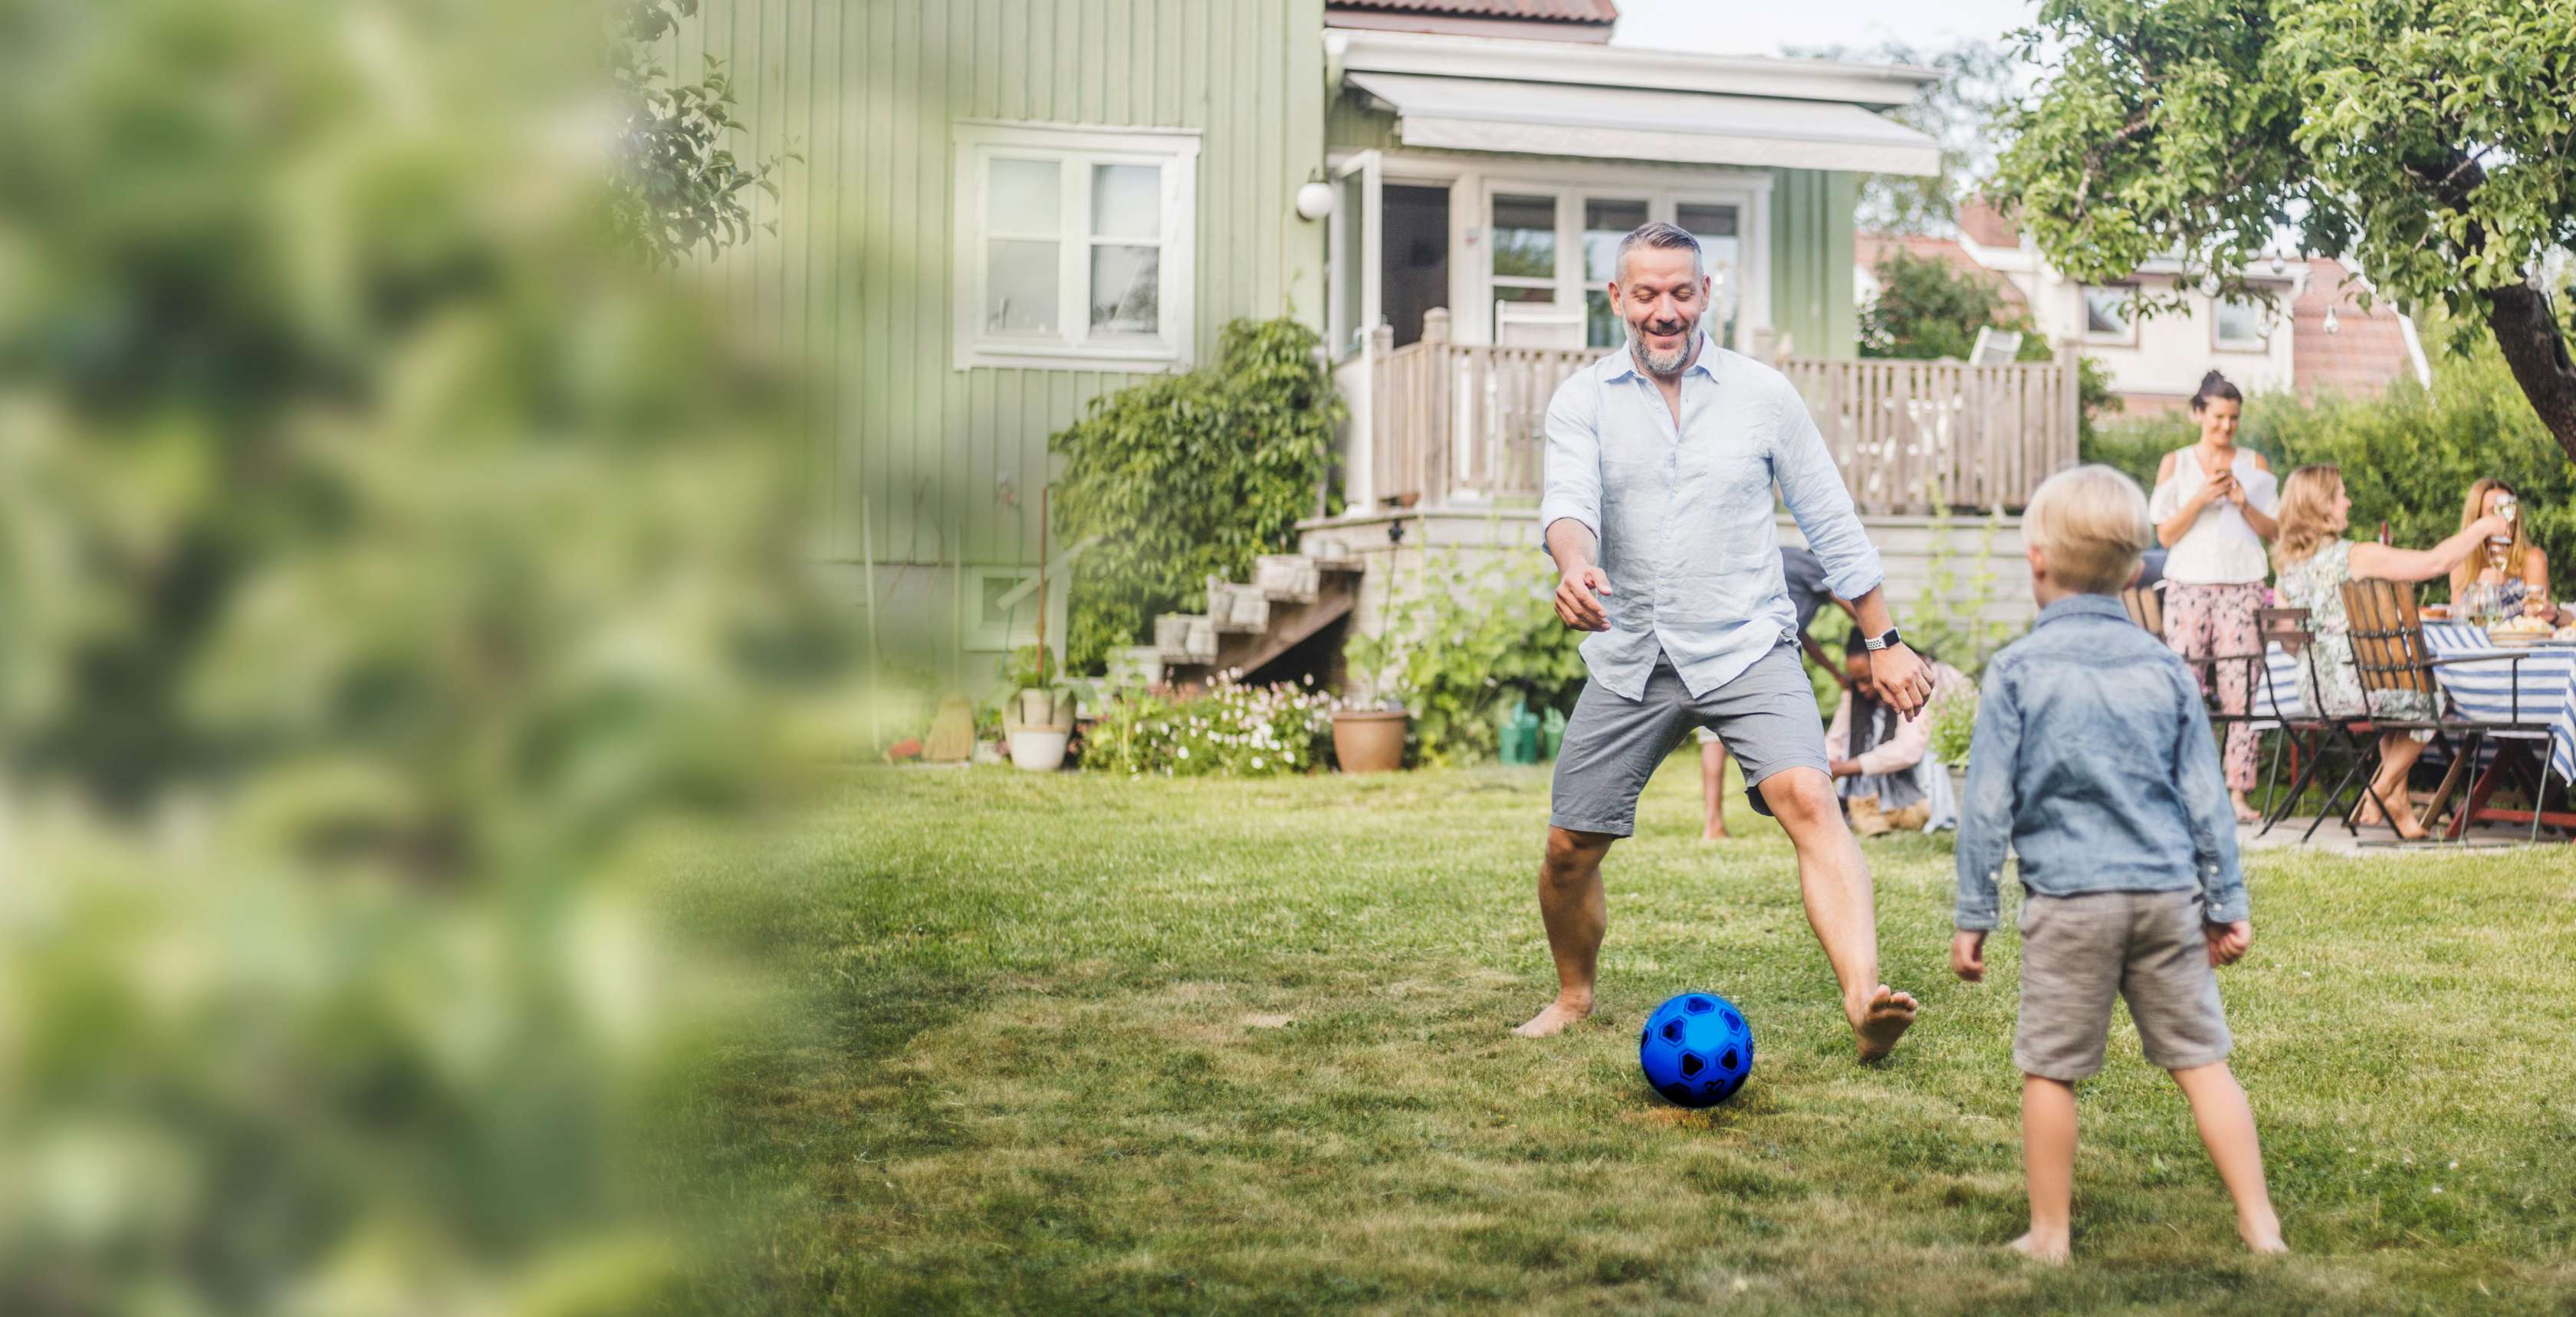 Kapitalunfallschutz: Ein Vaer spielt mit seinem Sohn im Garten Fußball